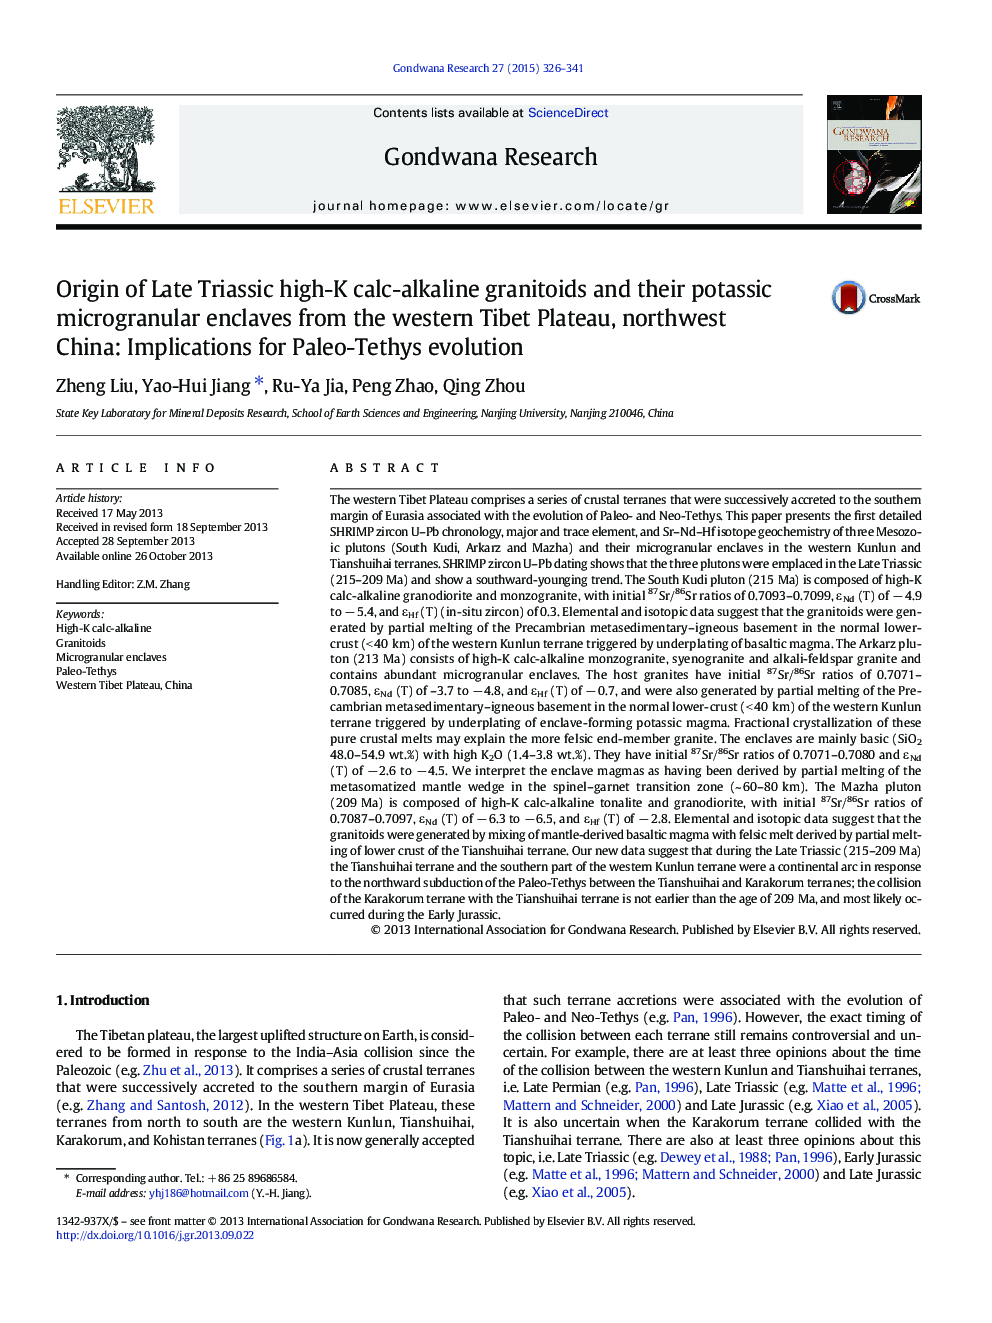 منشا گرانیتویدها کالک-قلیایی بالایی از تریاس بالا و انلواکهای میکرو گرانول پتاسیم از پلاتو غربی تبت، شمال غربی چین: پیامدهای تکامل پالو تتیس 